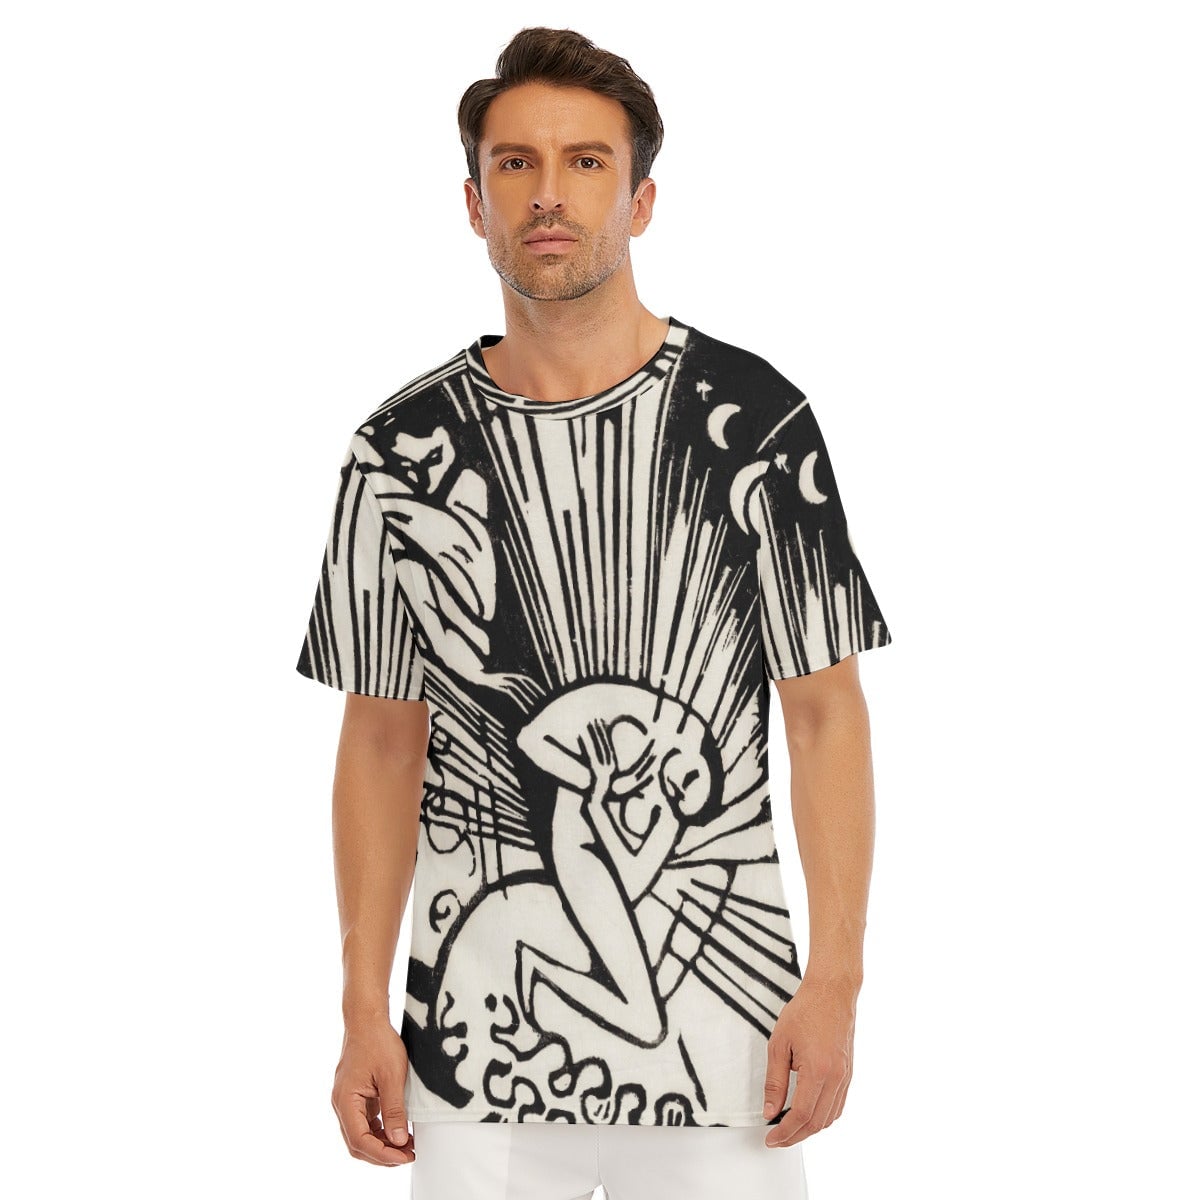 Franz Marc’s Reconciliation T-Shirt - Famous Artwork Tee